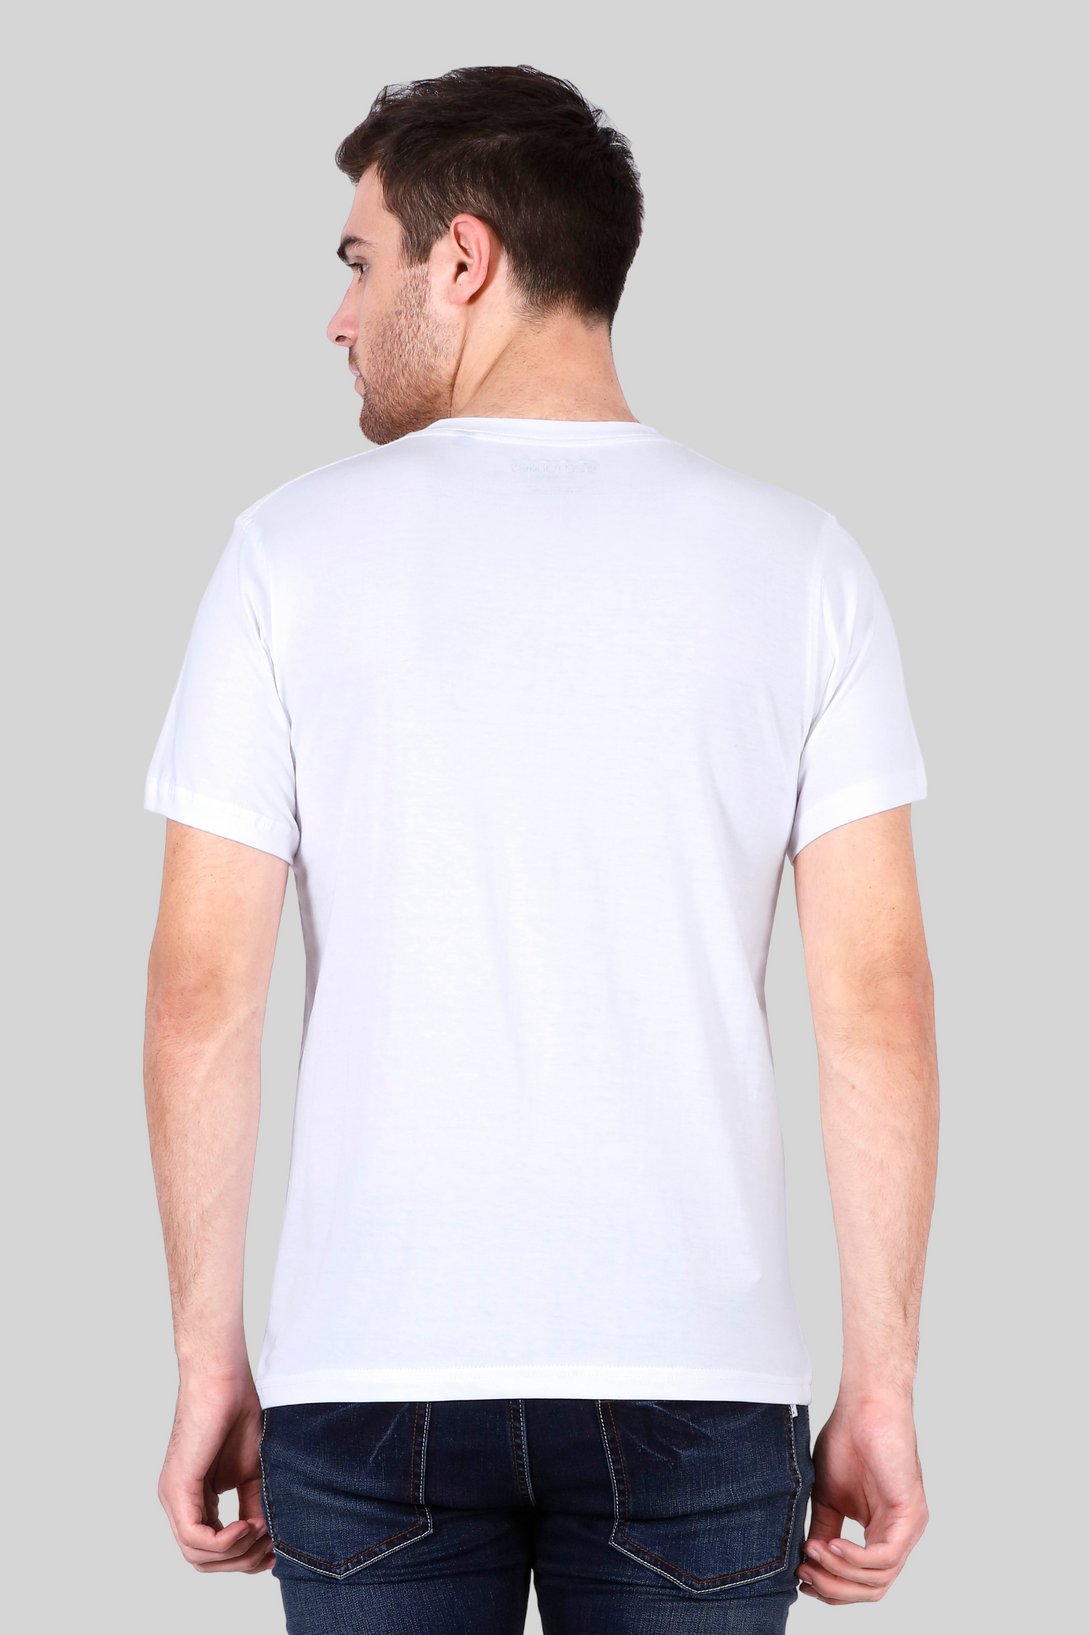 White V Neck T-Shirt For Men - WowWaves - 8